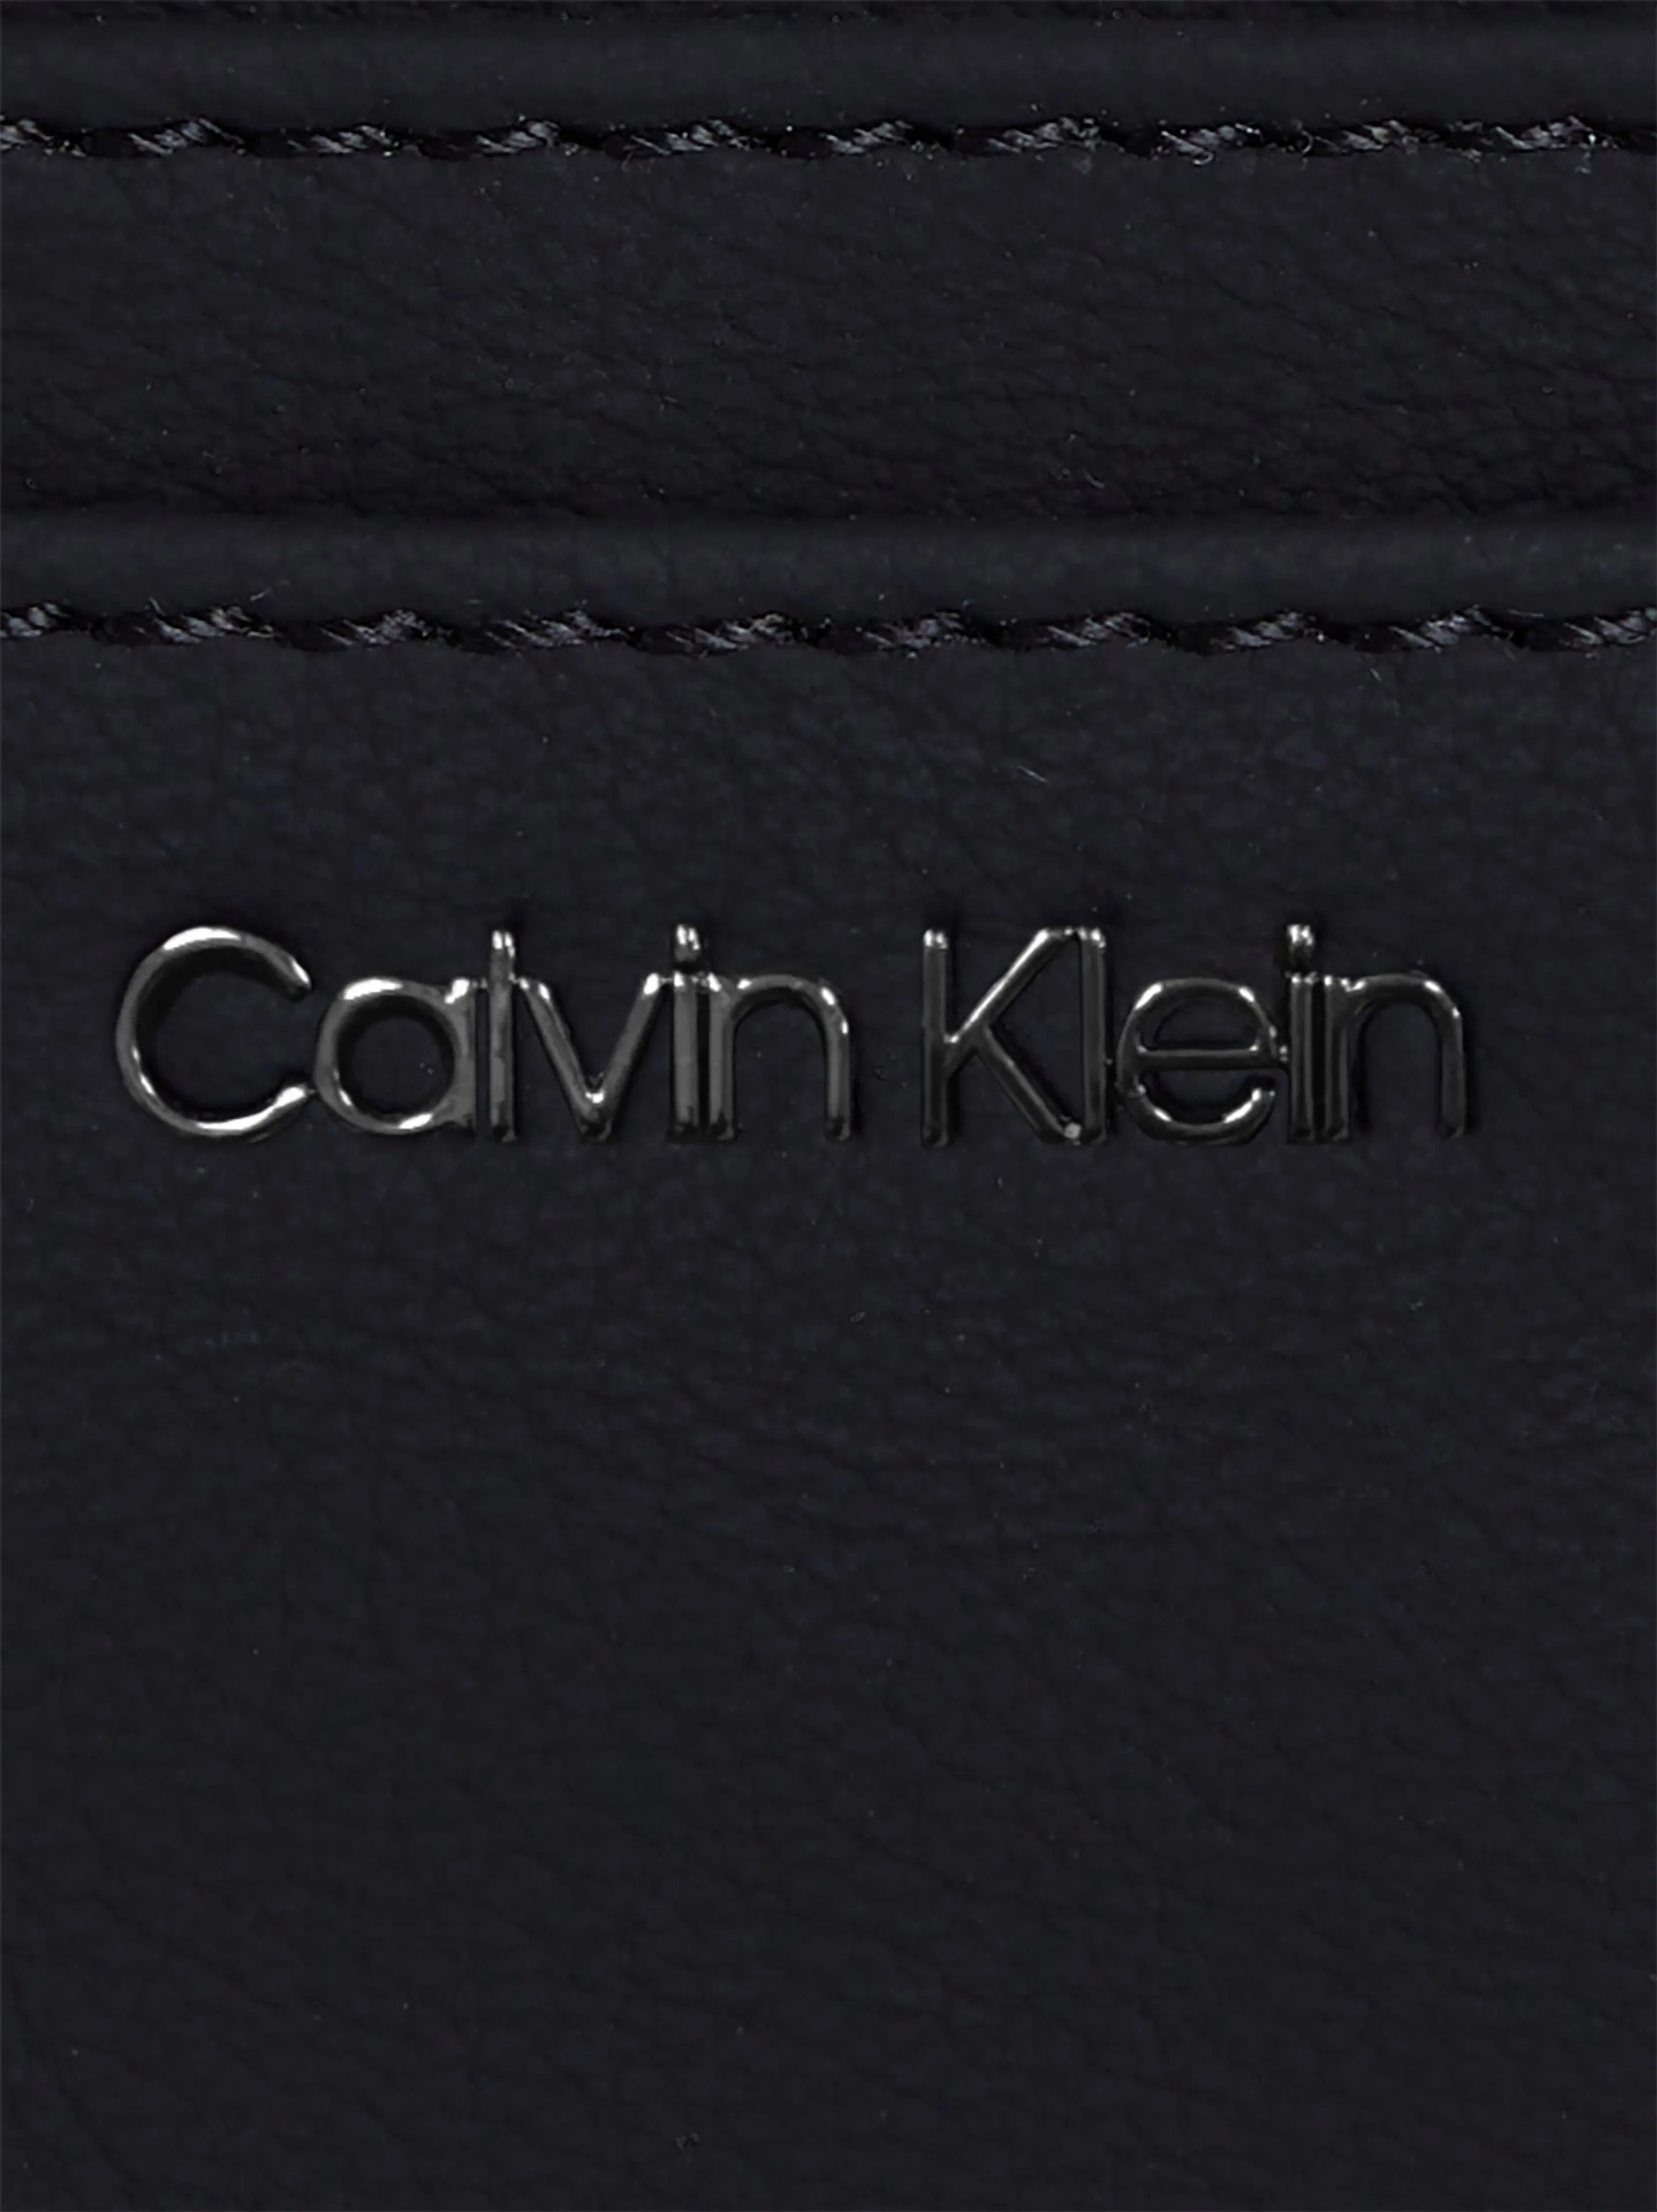 Calvin Klein Calvin soft korttikotelo